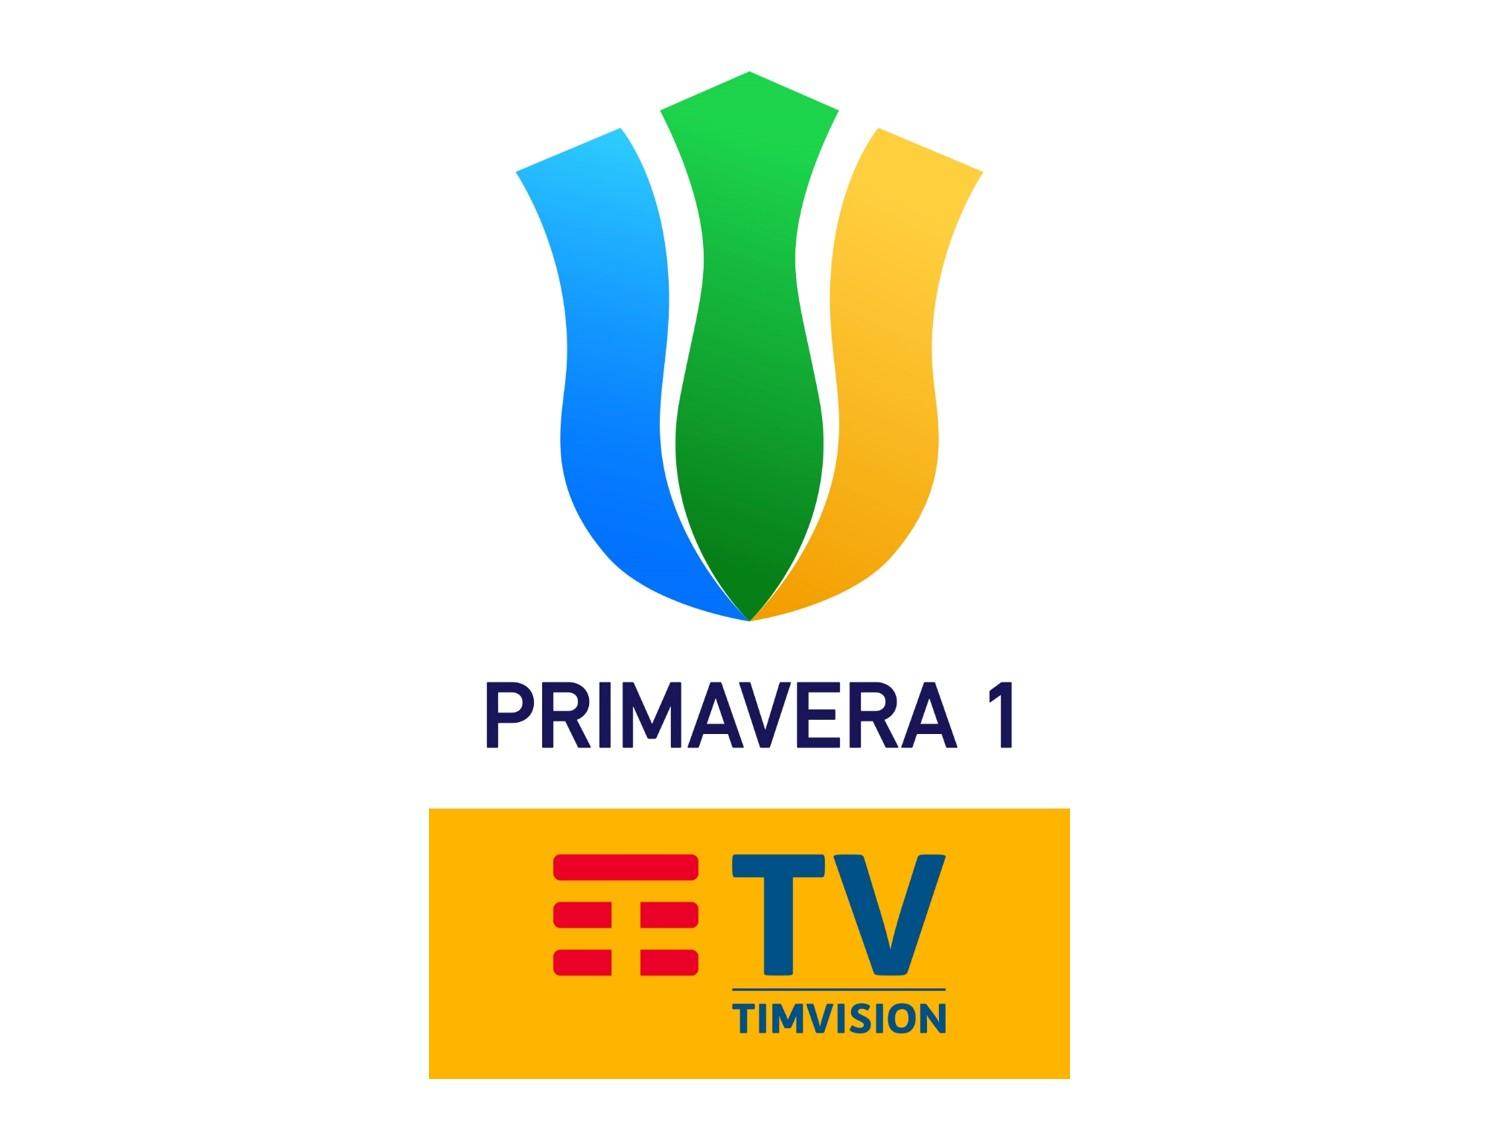 Sportitalia Campionato Primavera 1 TimVision - Programma 29a Giornata e Telecronisti